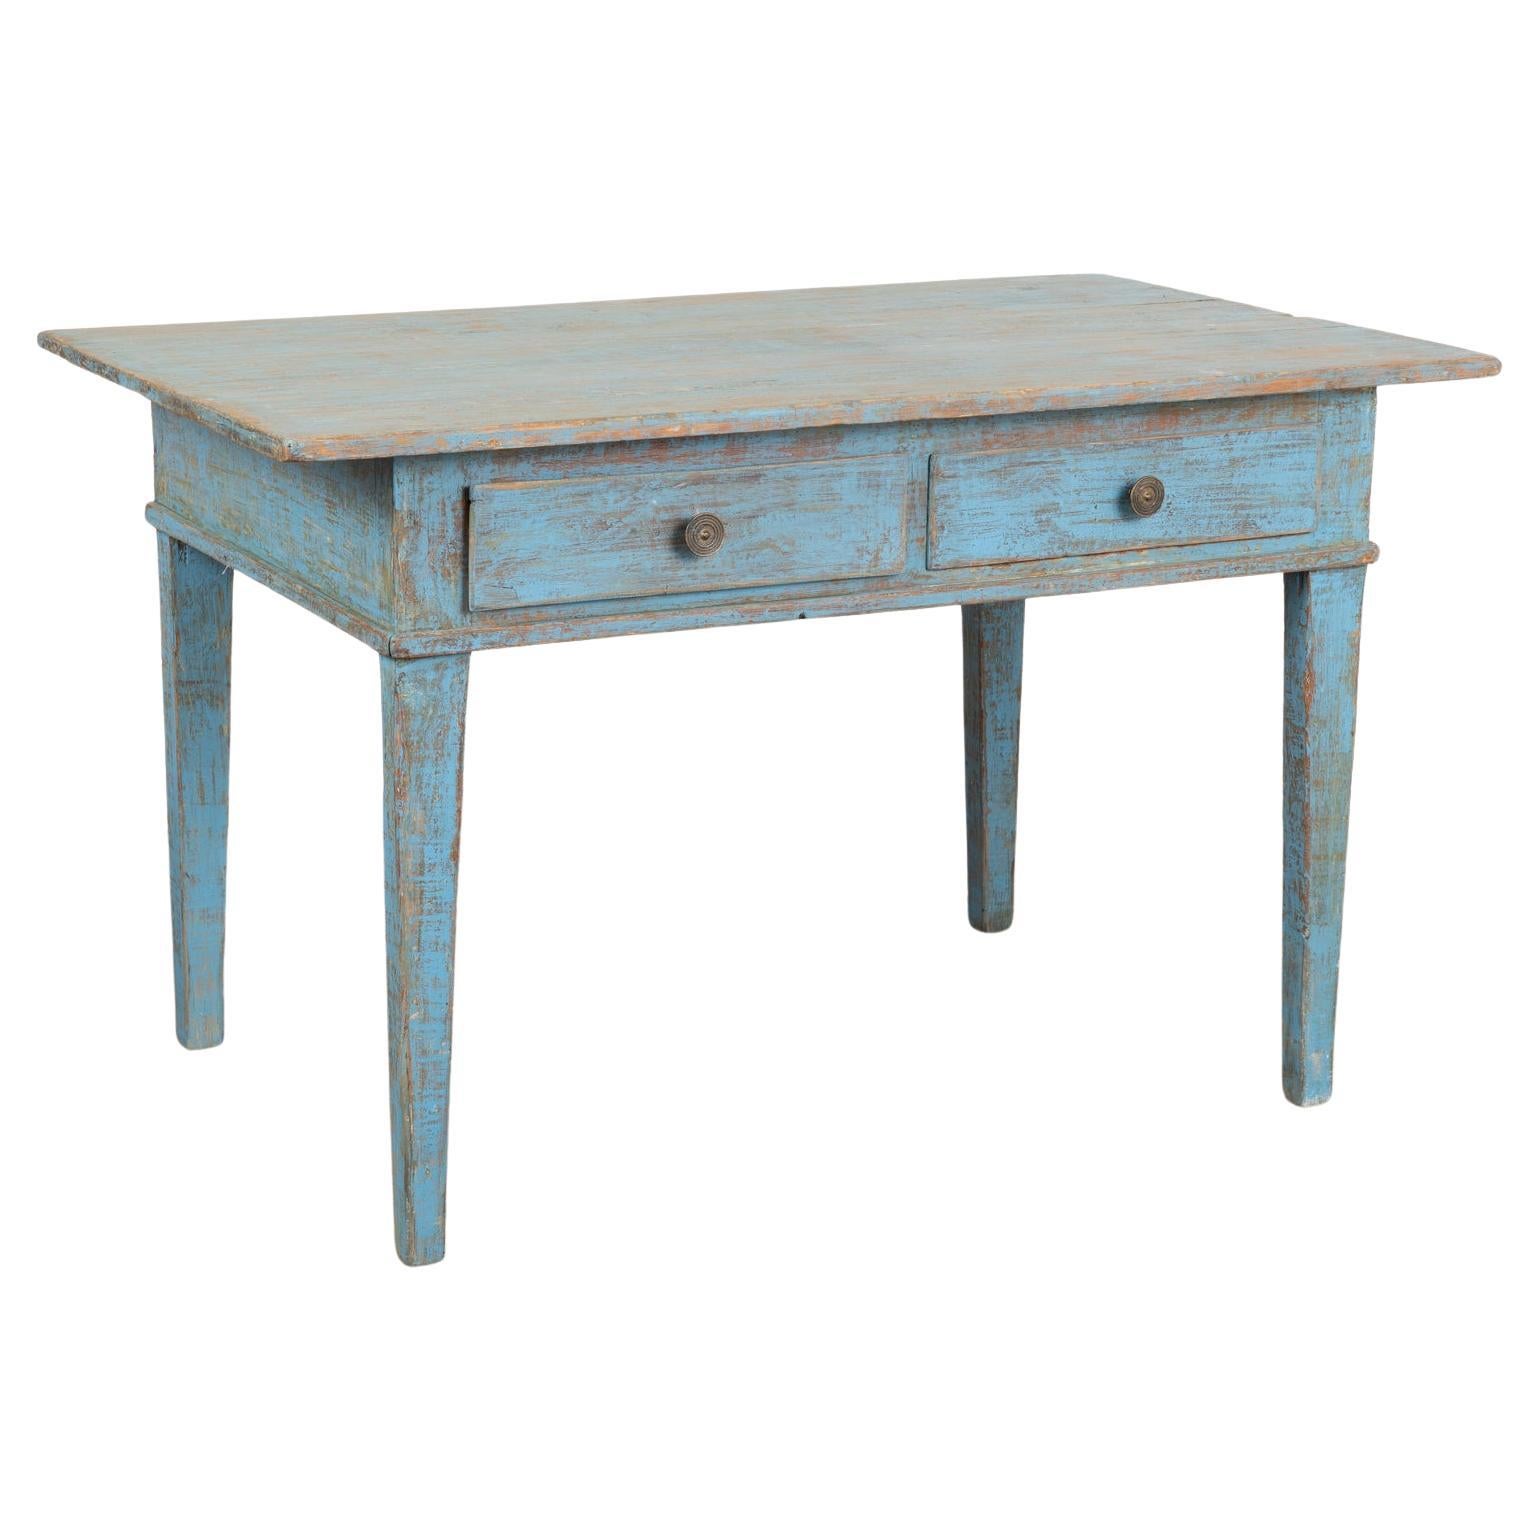 Blau gestrichener Kiefernholztisch Schreibtisch mit 2 Schubladen, Schweden um 1860-80